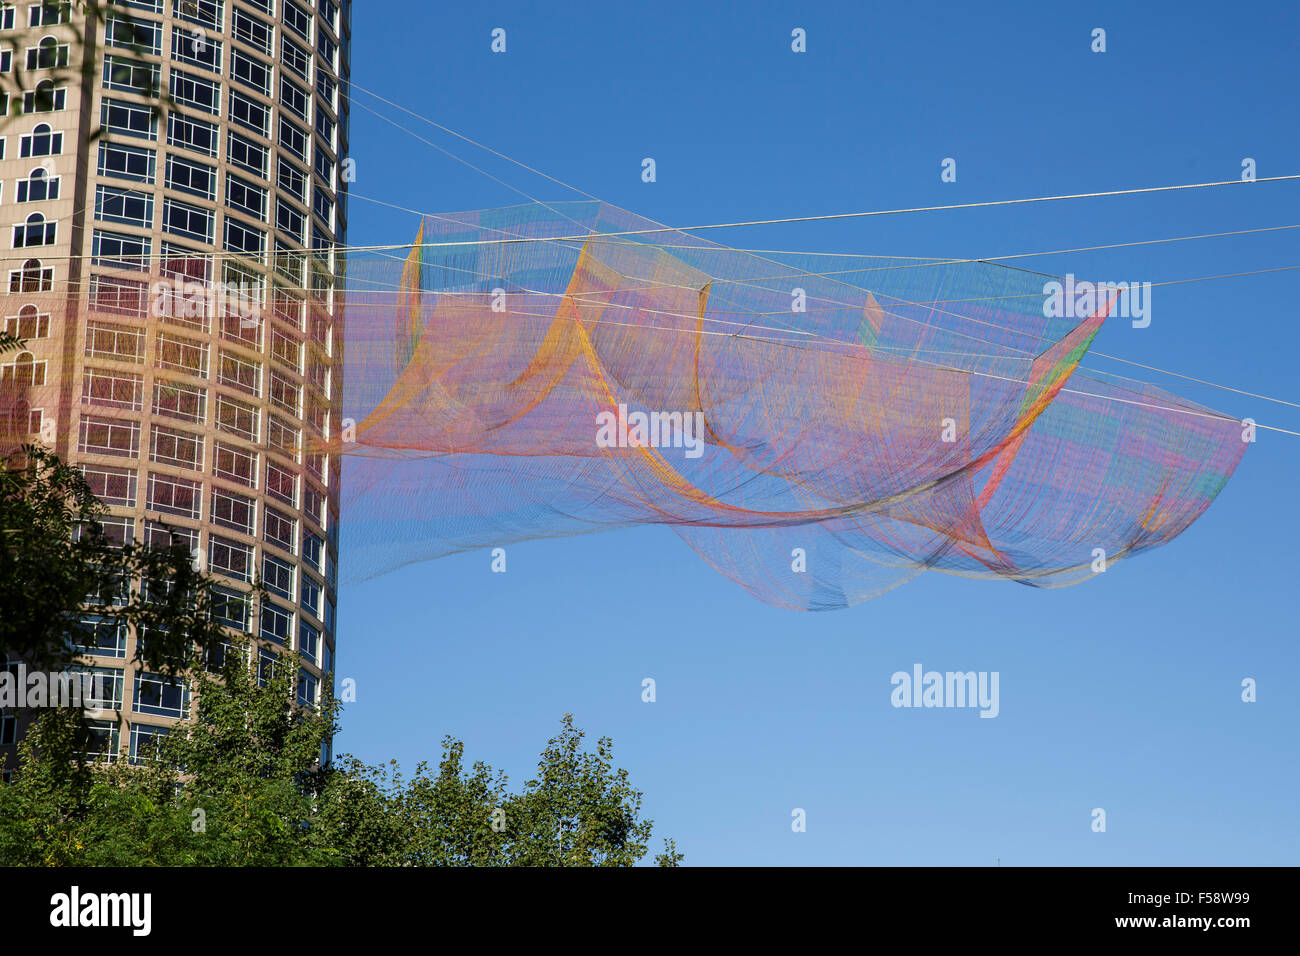 Aériennes par Janet Echelman suspendues au-dessus de Boston downtown district contre un ciel bleu. Banque D'Images